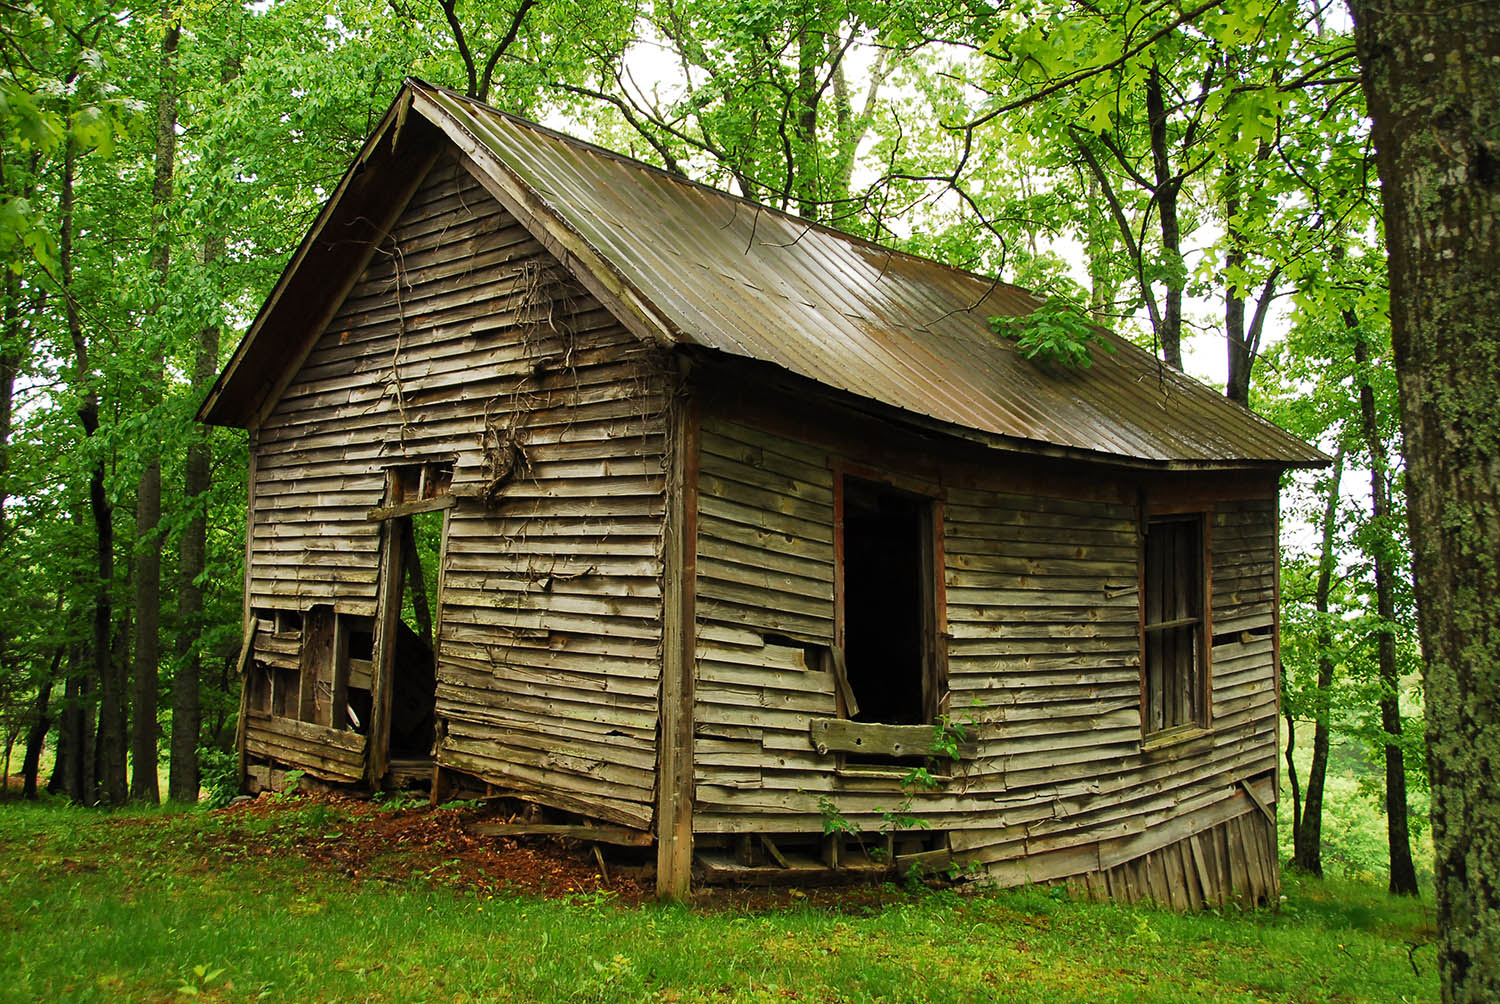 Shack_Dilapidated_Ramshackled_Rundown_Old_House_Rural_Wooded_Virginia.jpg